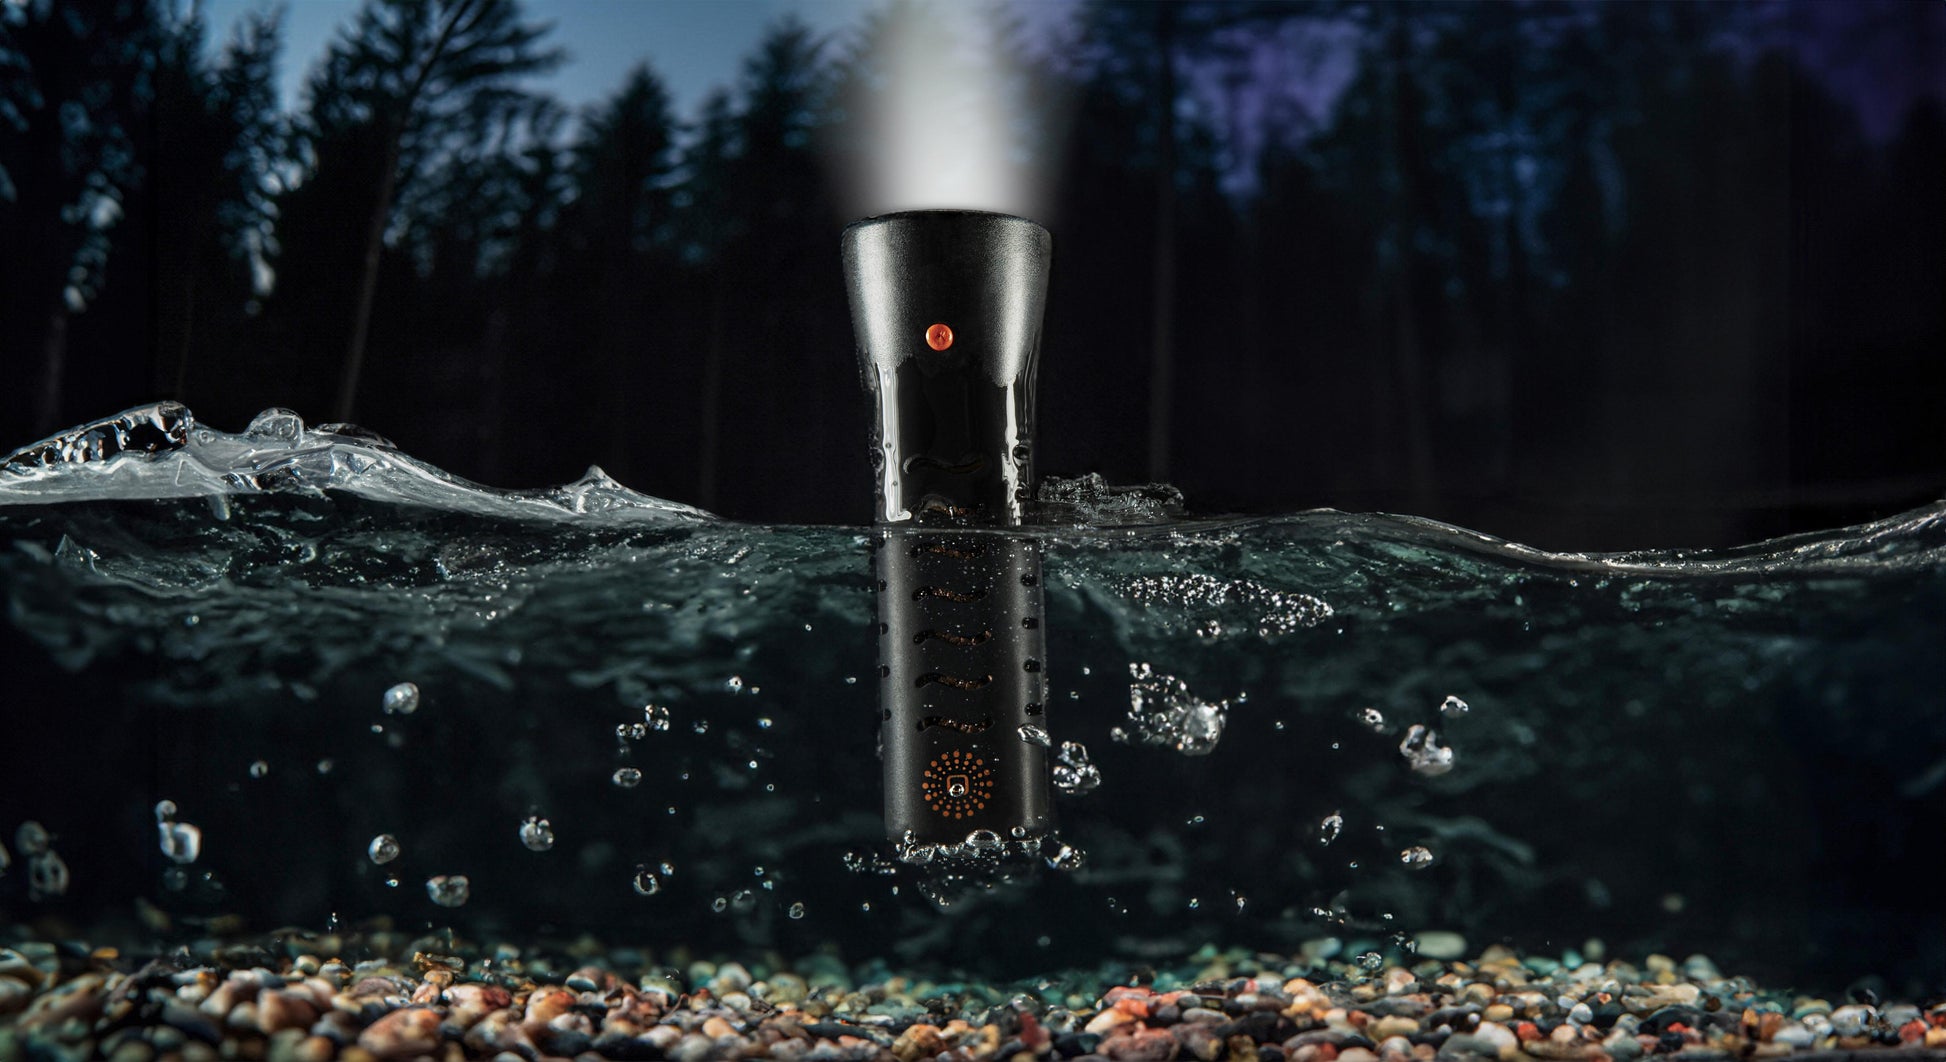 WaterLamp in Aktion: Taschenlampe am Waldseeufer. Seitenansicht unter Wasser und darüber. Der Strahl durchbricht die Dunkelheit. Entdecke die faszinierende Beleuchtung im WaterLamp Shop!